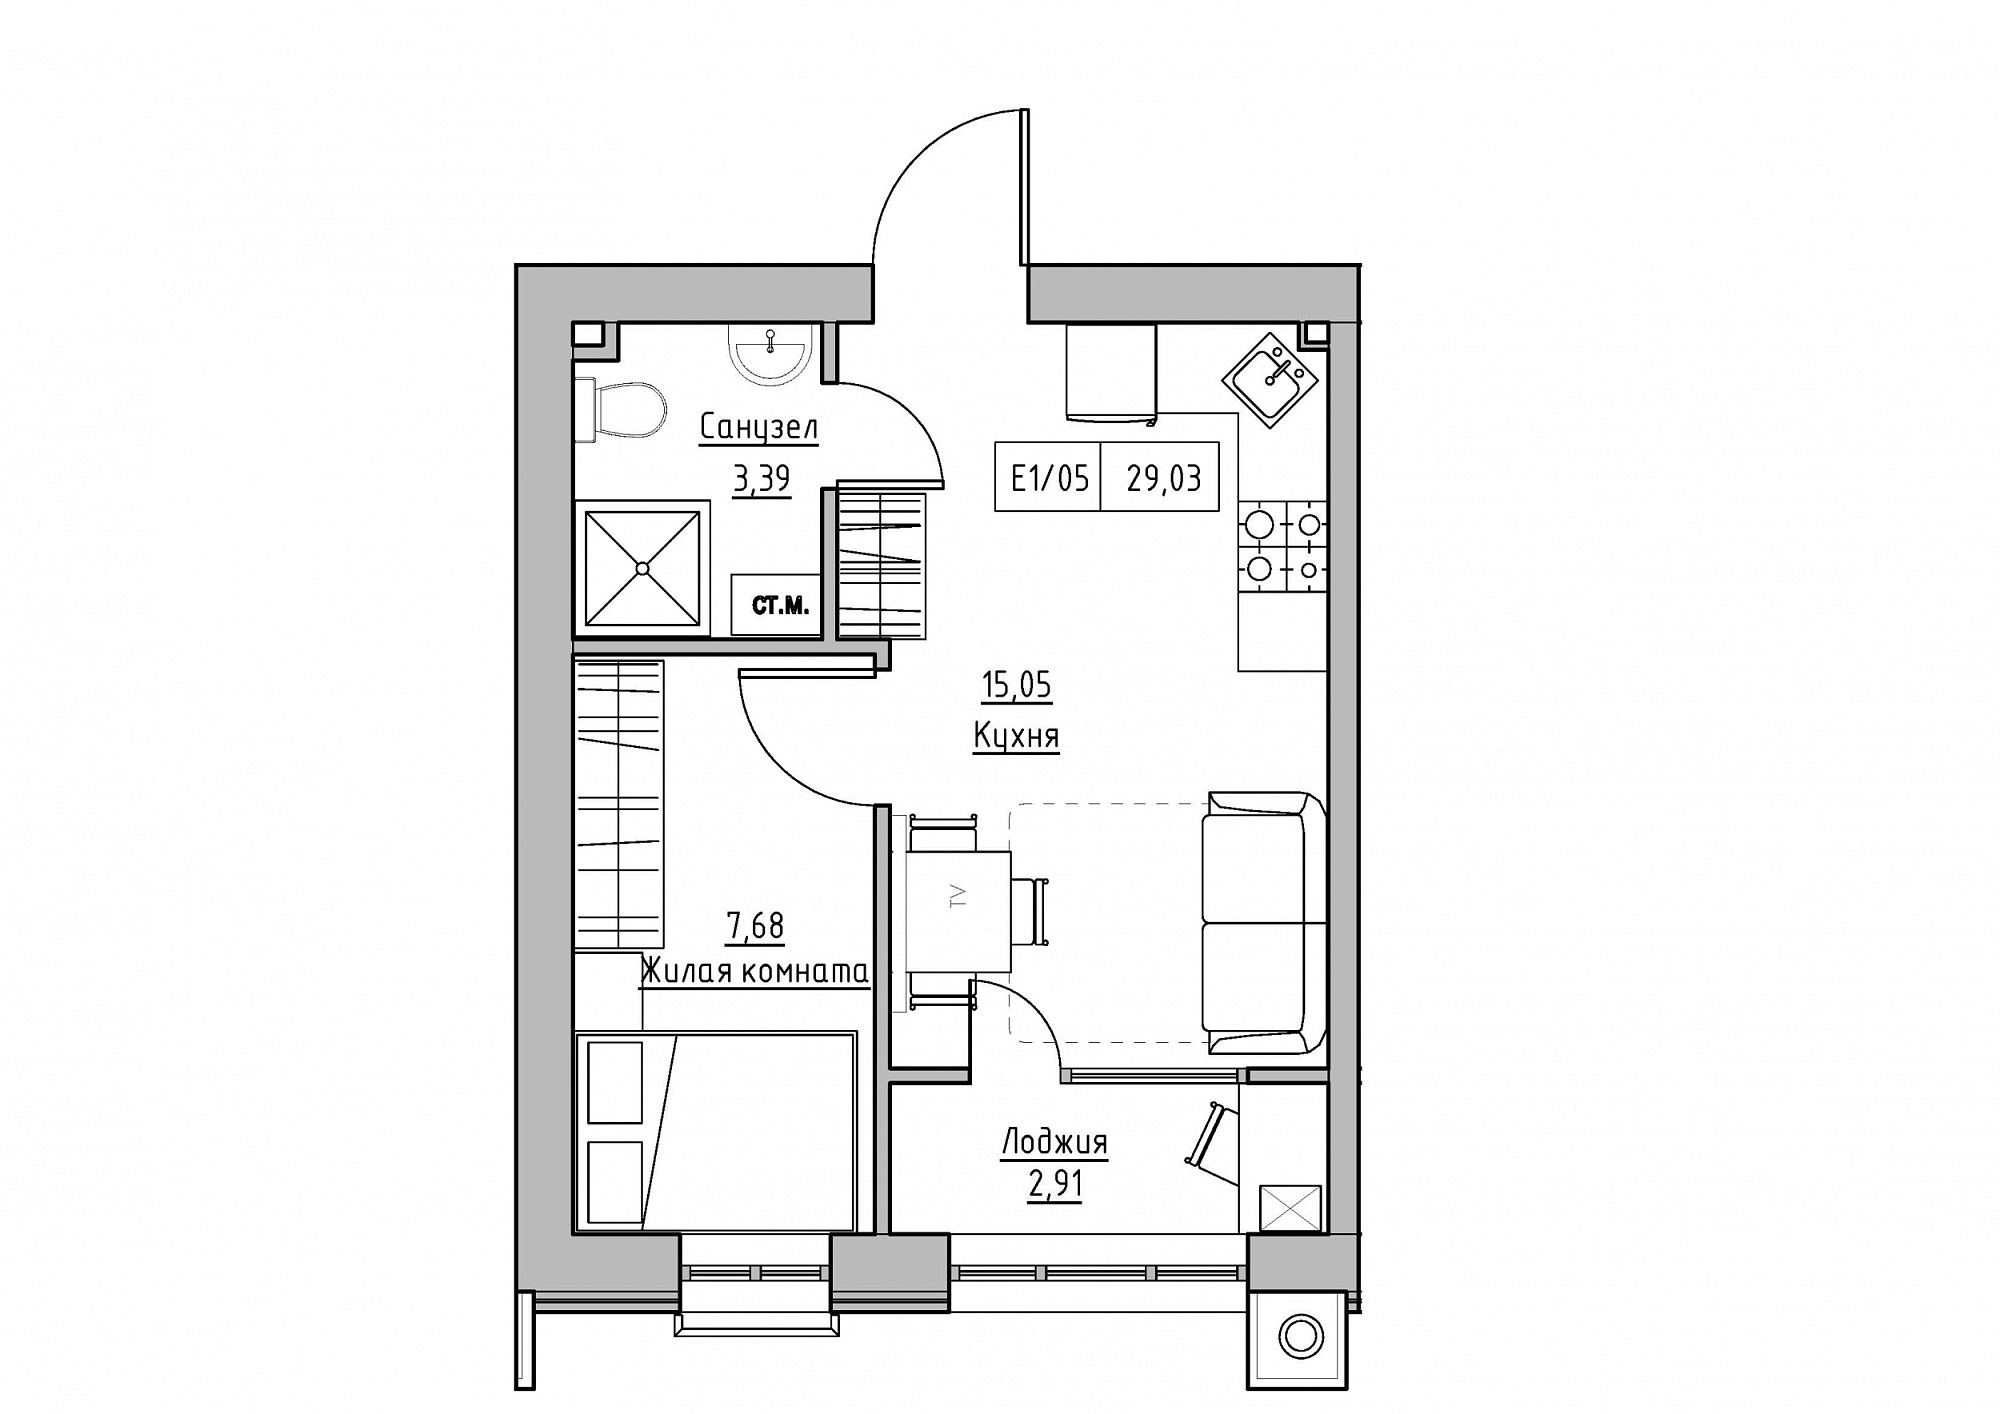 Планування 1-к квартира площею 29.03м2, KS-012-04/0007.